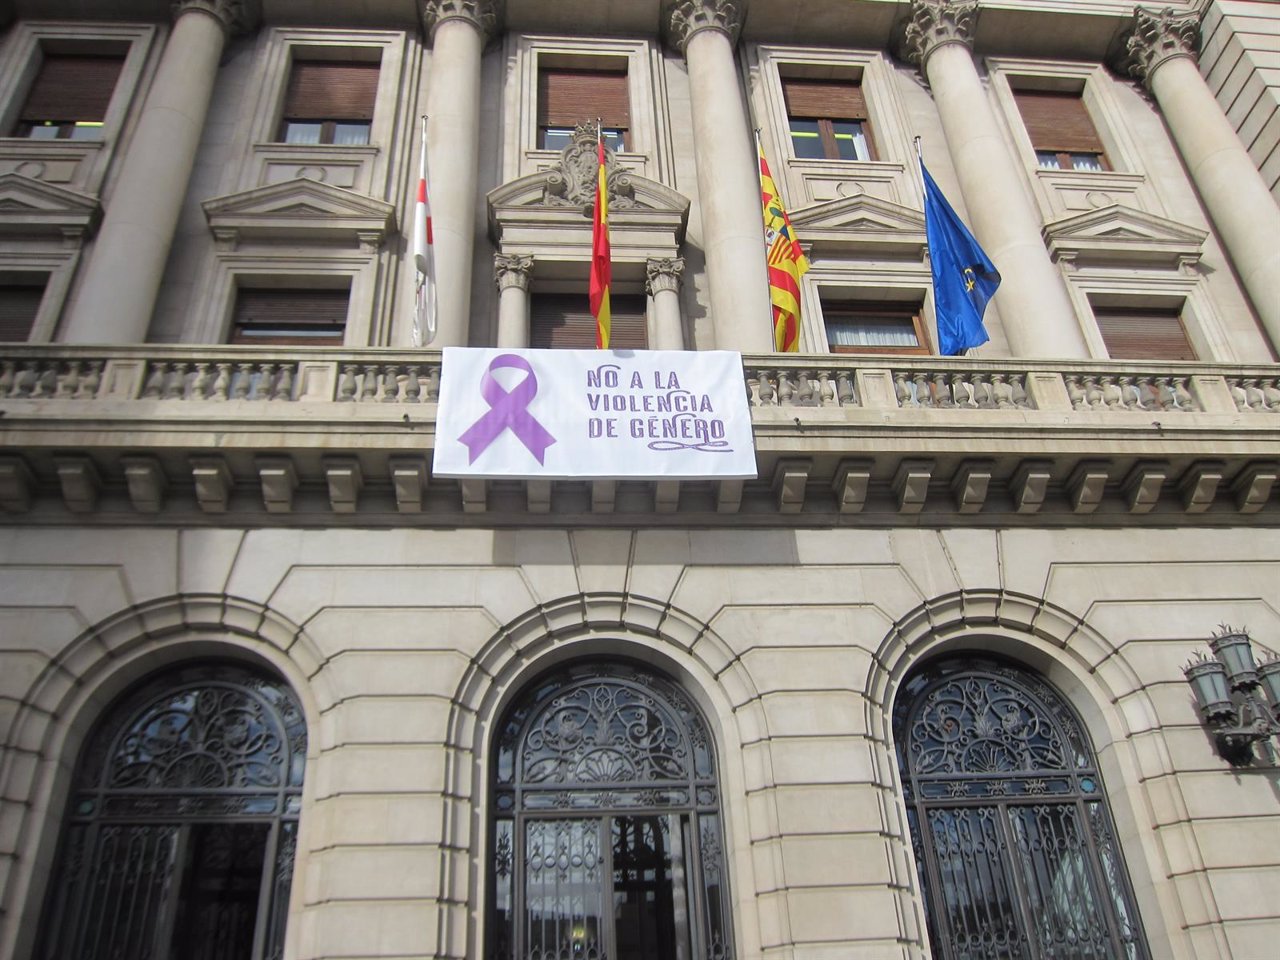 La DPZ luce en su fachada una pancarta contra la violencia de género